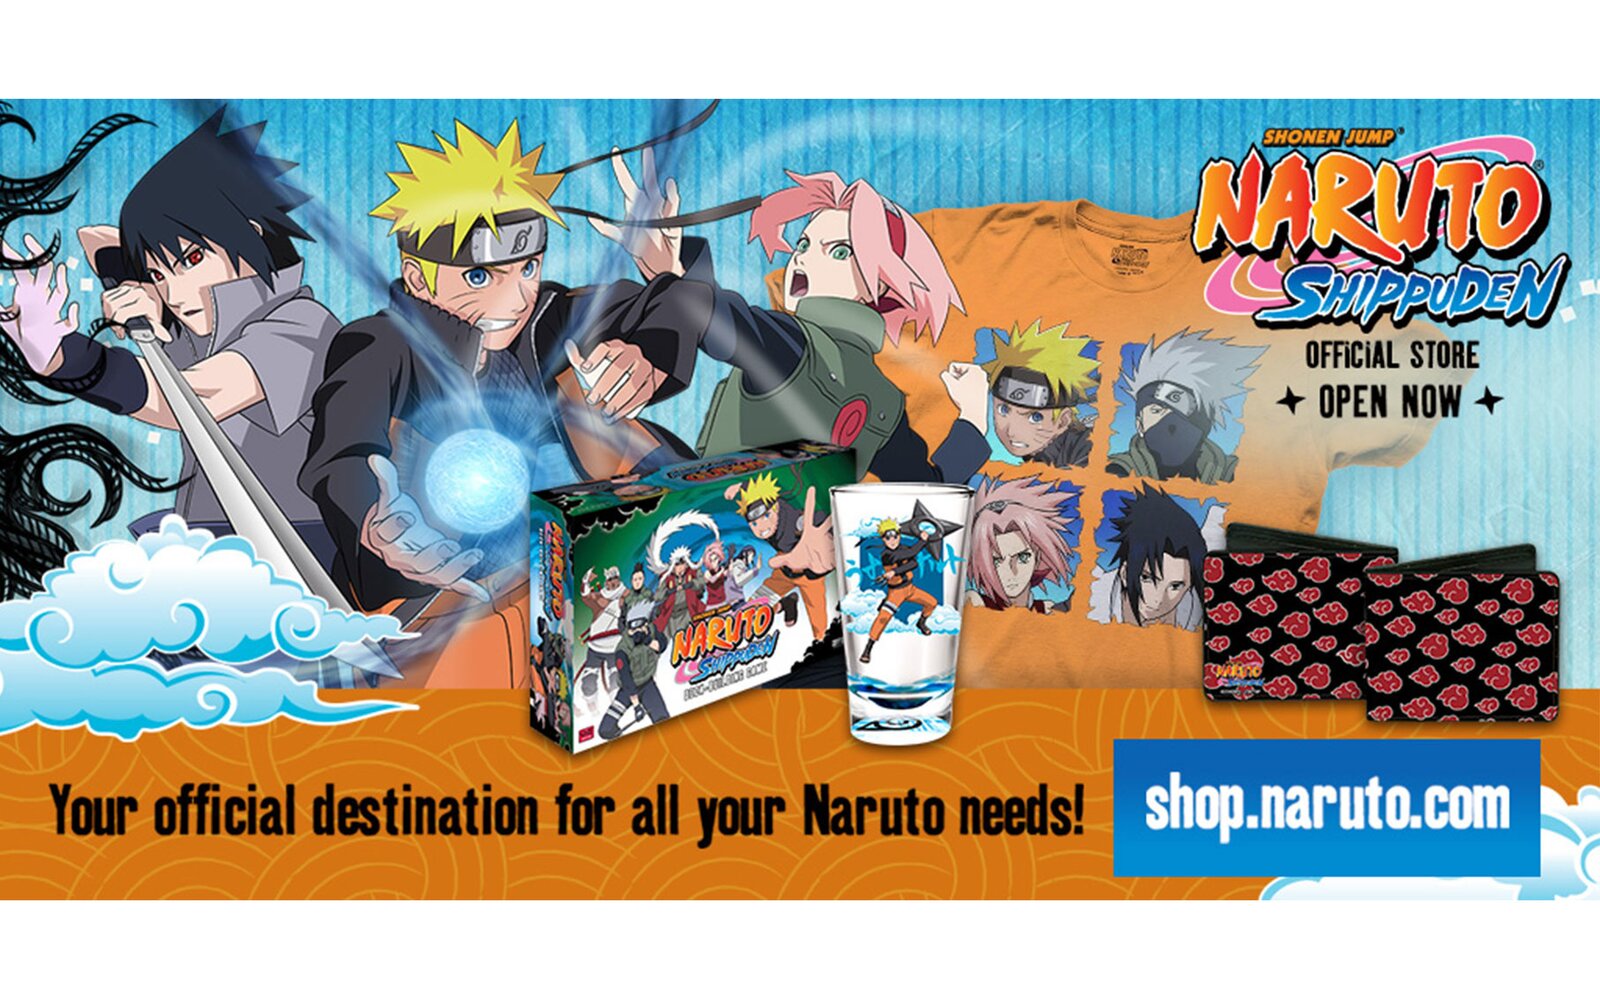 Naruto news